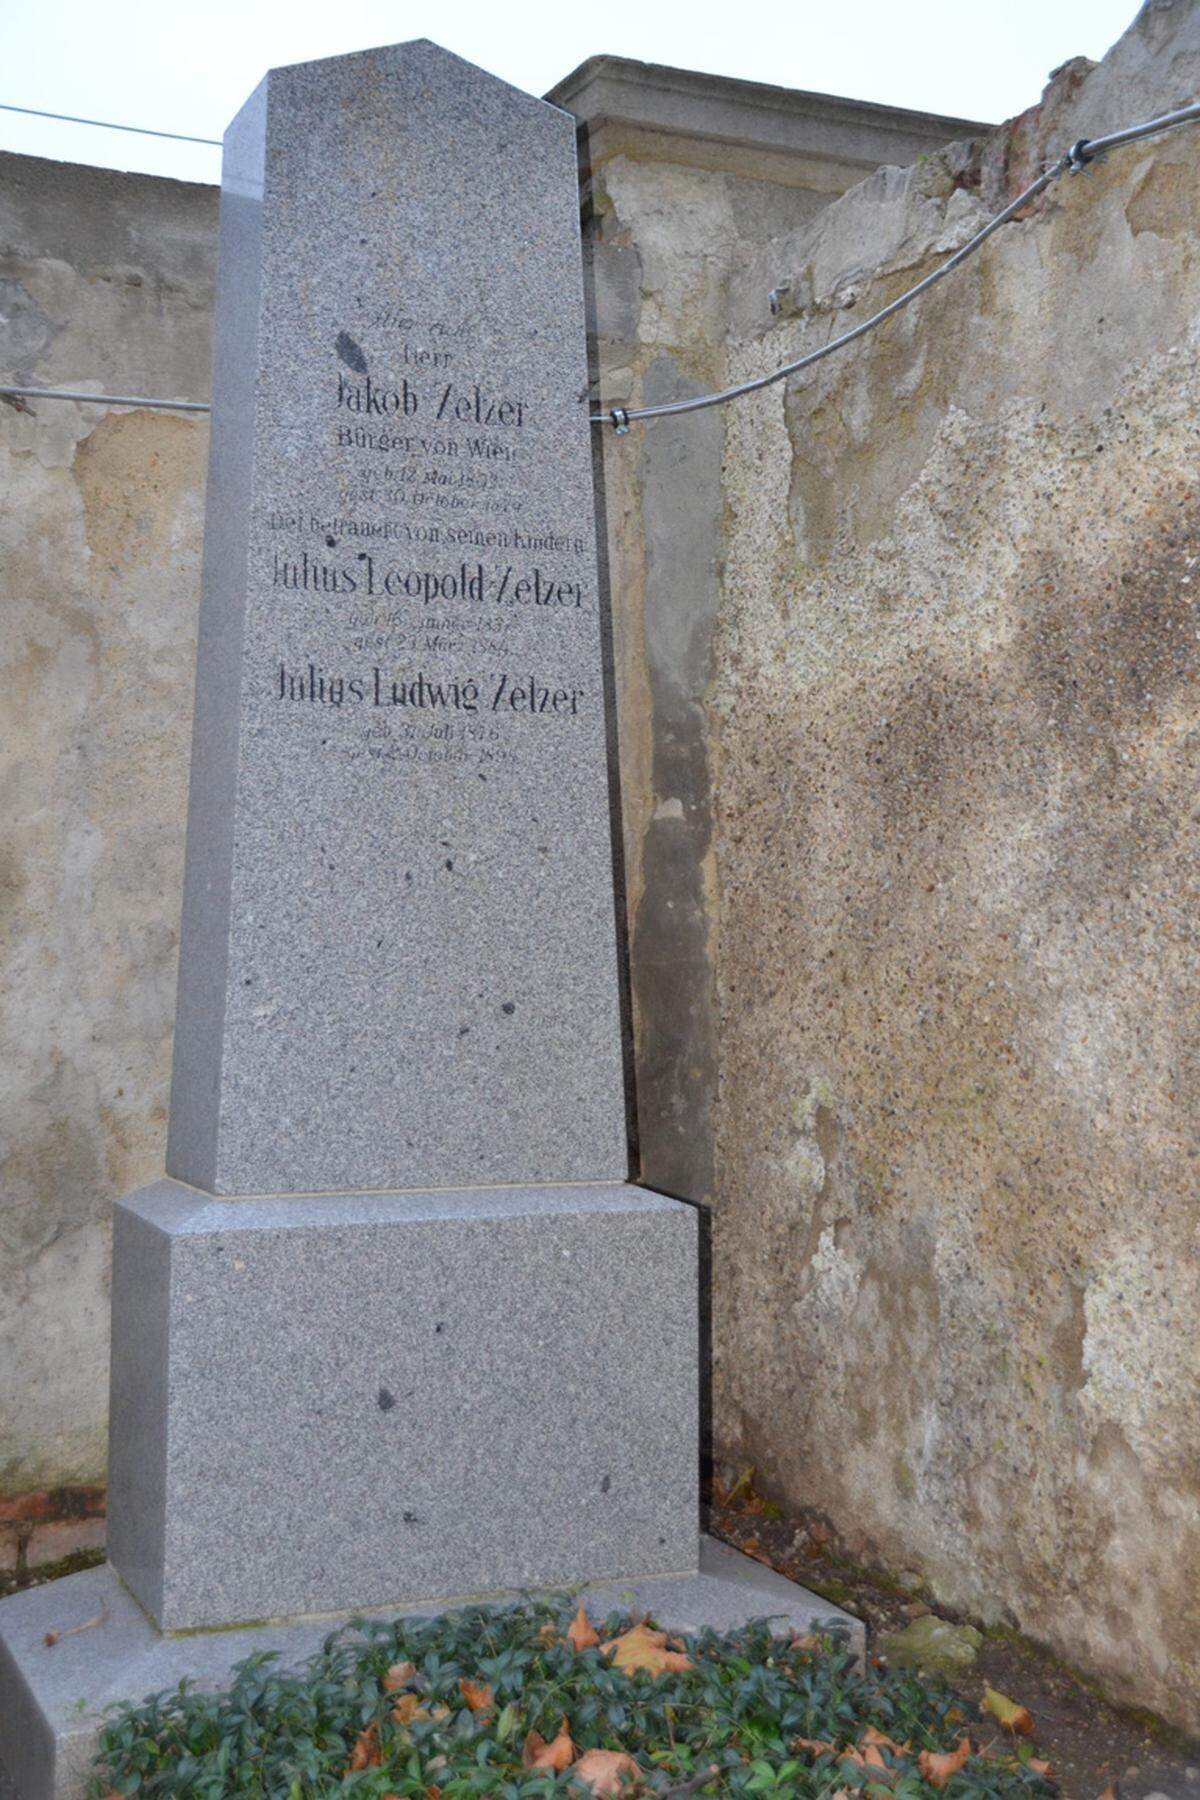 Am 1. November 1874, dem Allerheiligen-Tag, schlug schließlich die offizielle Geburtsstunde des „Zentrals“. Gleich am ersten Morgen wurden 13 Menschen beerdigt. Zwölf von ihnen, darunter ein Kleinkind, wurden in einem Schachtgrab beigesetzt. Der Josefstädter Privatier Jakob Zelzer hingegen hatte ausreichend Mittel, um sich ein Familiengrab zu leisten, das noch heute besichtigt werden kann – und damit das älteste Grab des Zentralfriedhofs darstellt.